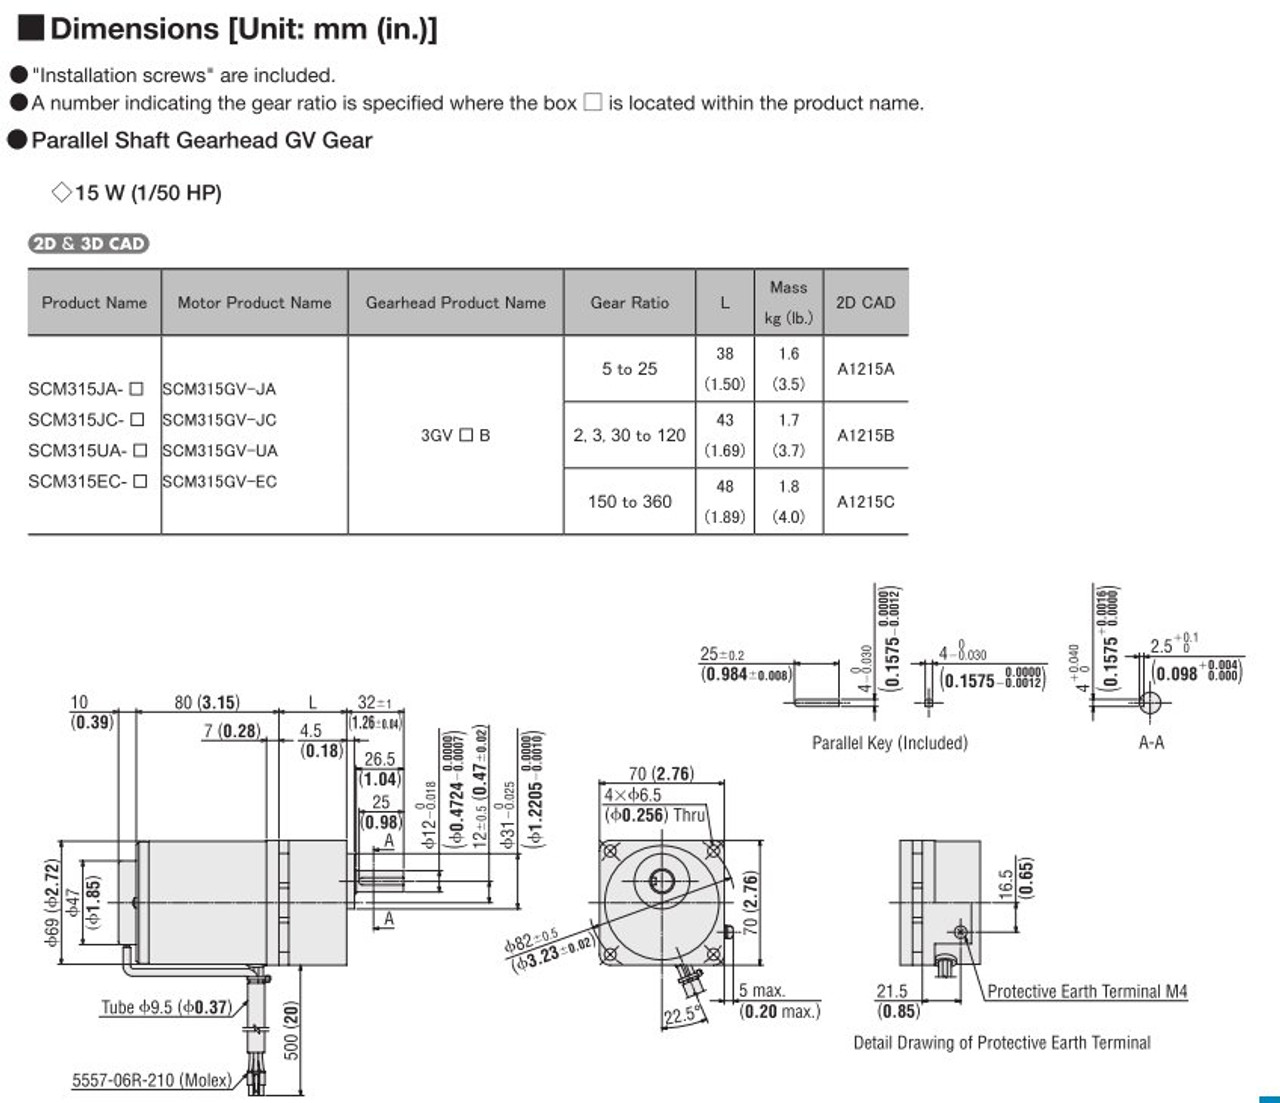 SCM315EC-250 / US2D15-EC-CC - Dimensions